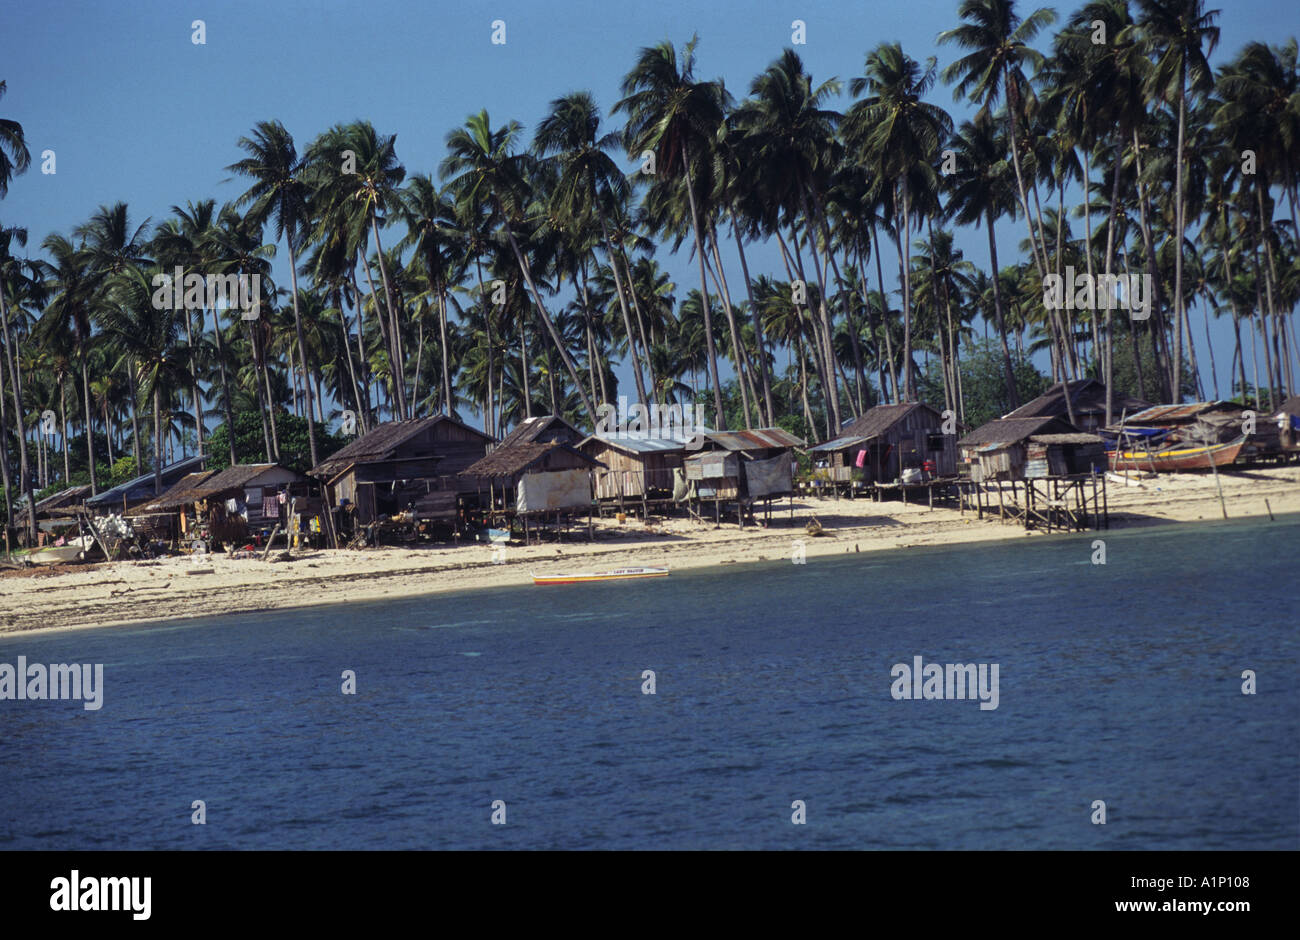 Badjao Badjau or Tau Laut sea gypsies settled Pulau Mabul Sabah Malaysia Borneo In Palm Trees Stock Photo